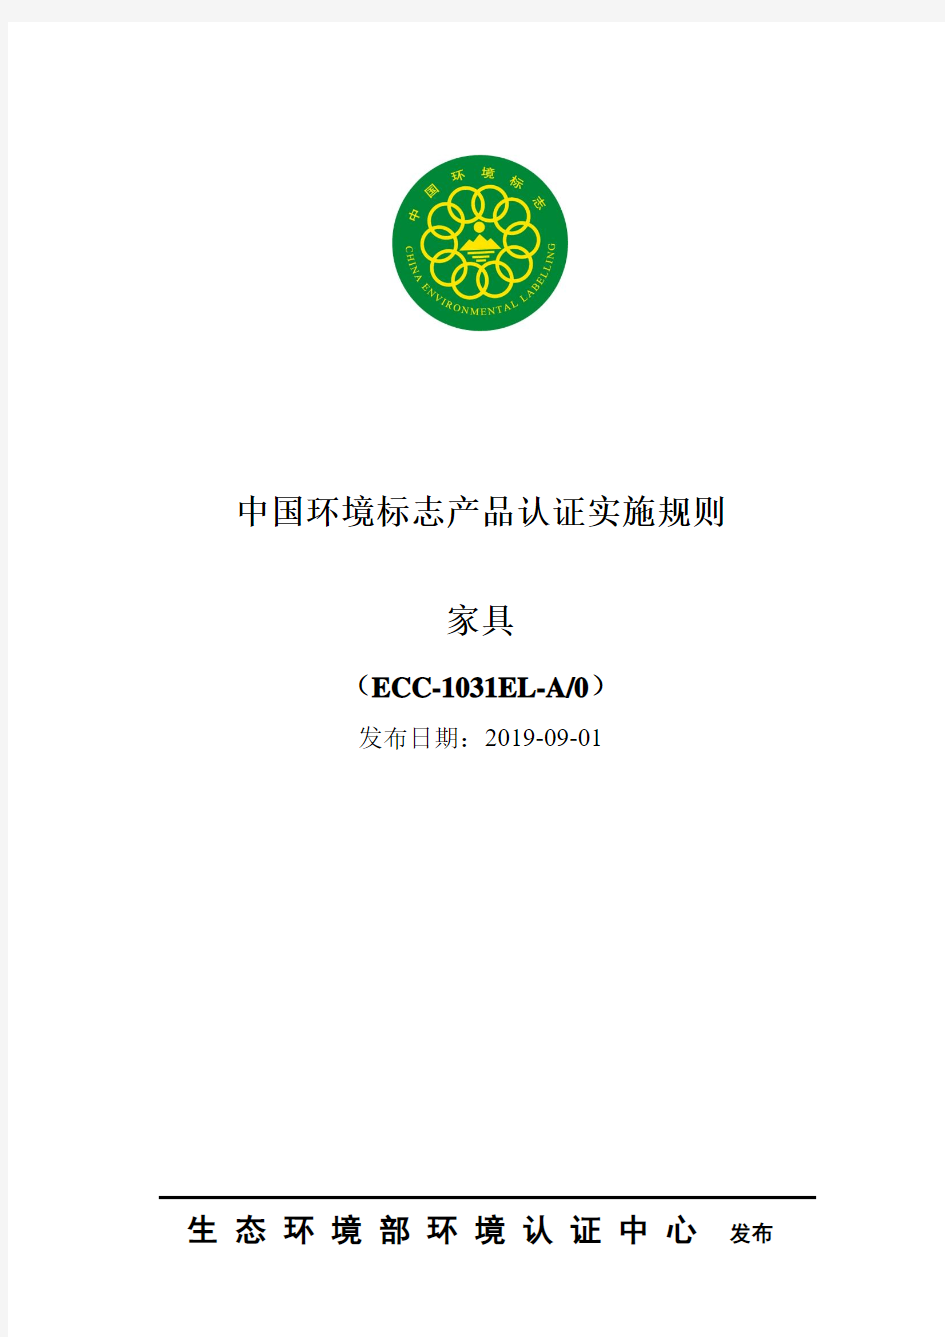 中国环境标志产品认证实施规则家具